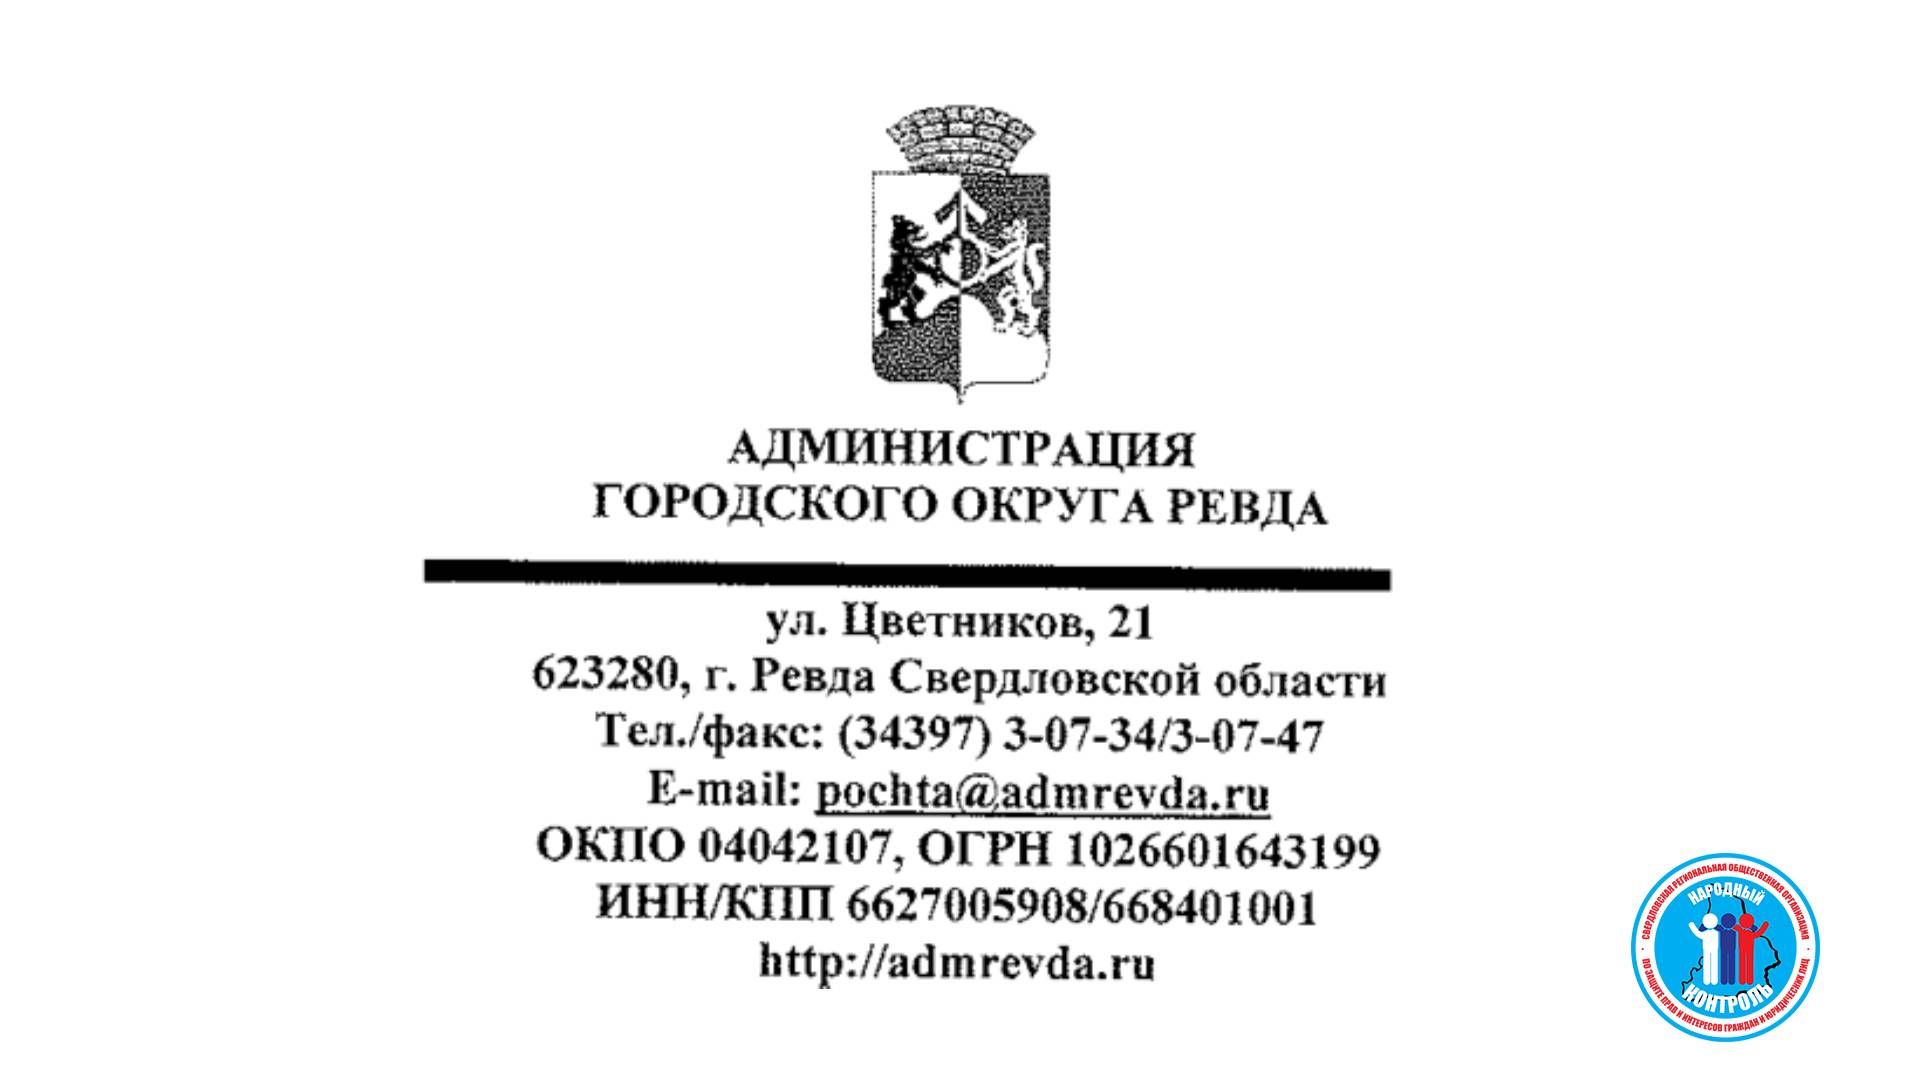 Ответ по состоянию тротуаров и съездов для инвалидов у парка «Серебряное копытце» в г. Ревда